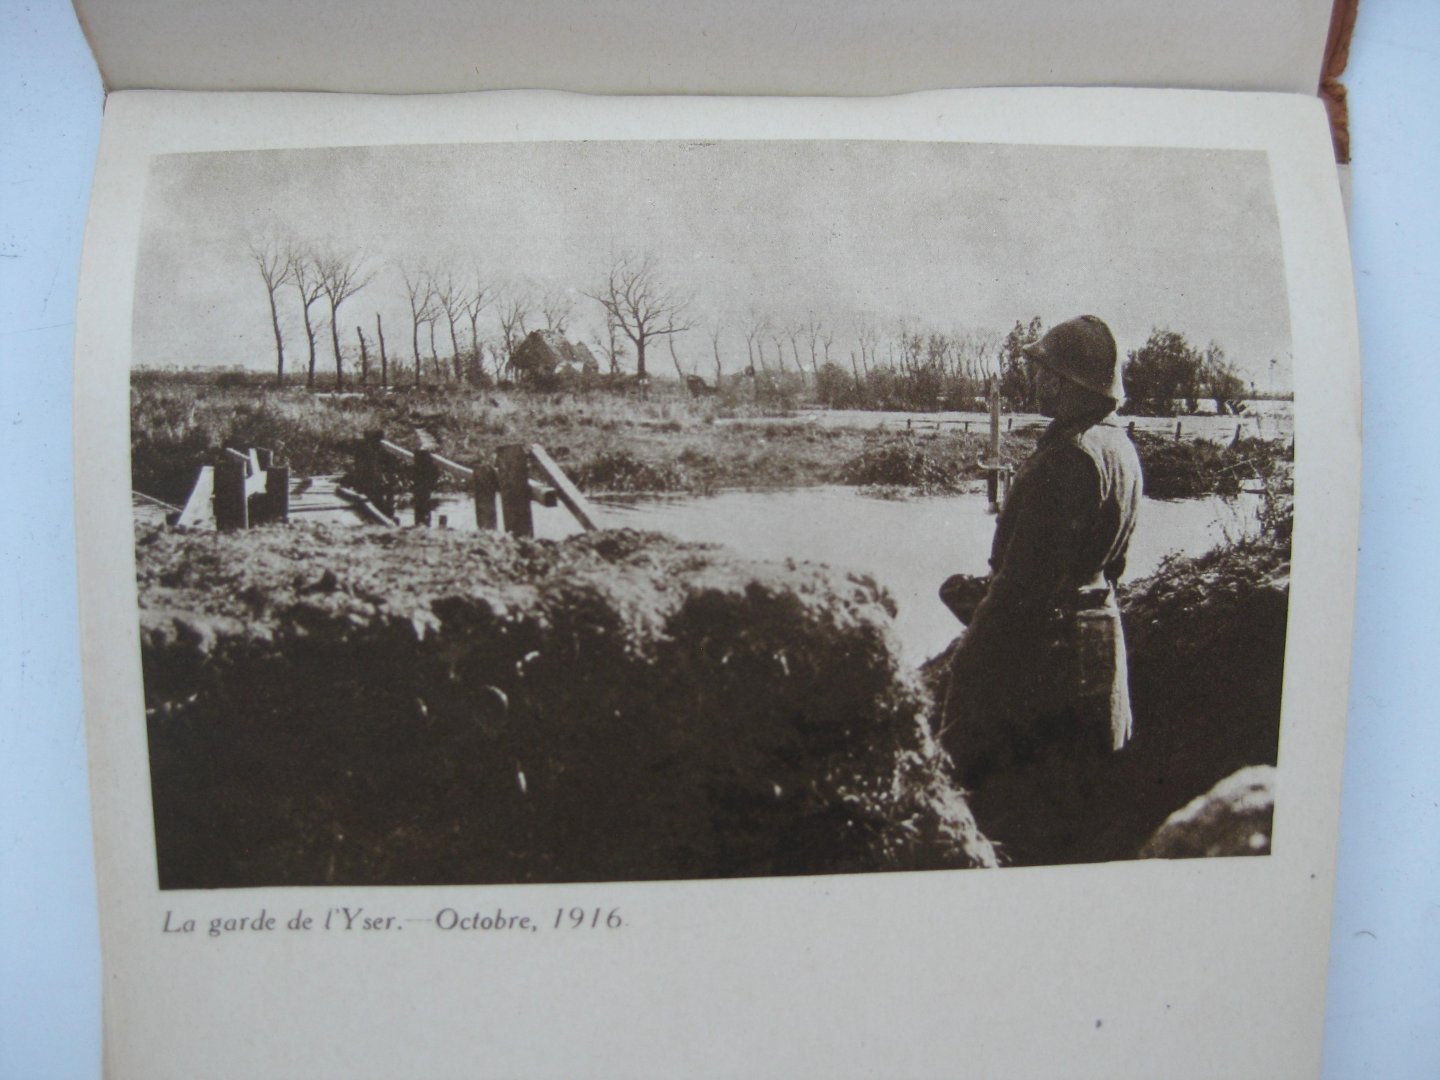 Preud'homme, J. (fotograaf) - Map met 23 foto's van krijgsverrichtingen aan de IJzer in 1916-1917.